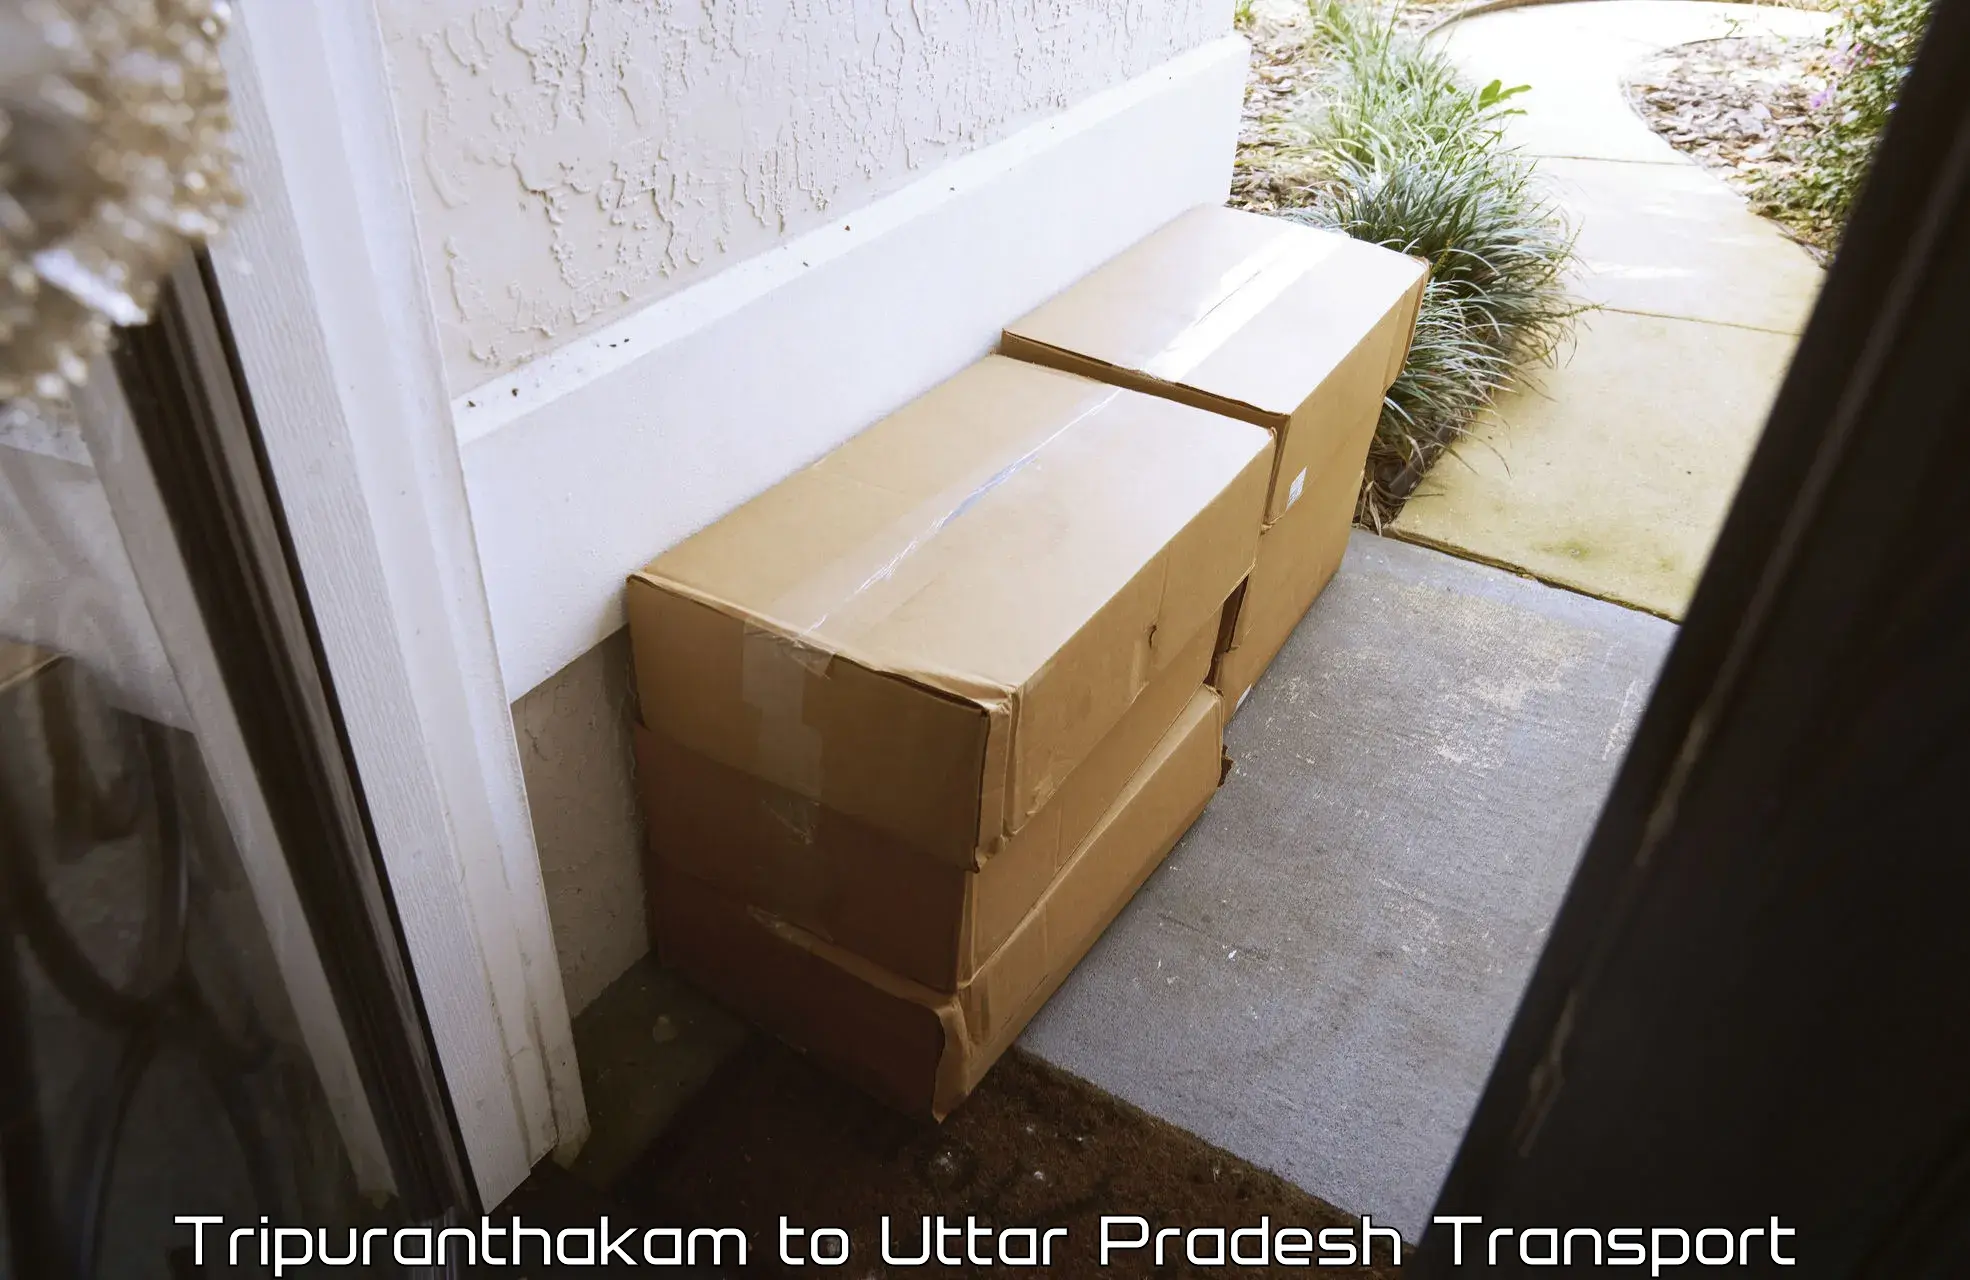 Vehicle parcel service Tripuranthakam to Sant Ravidas Nagar